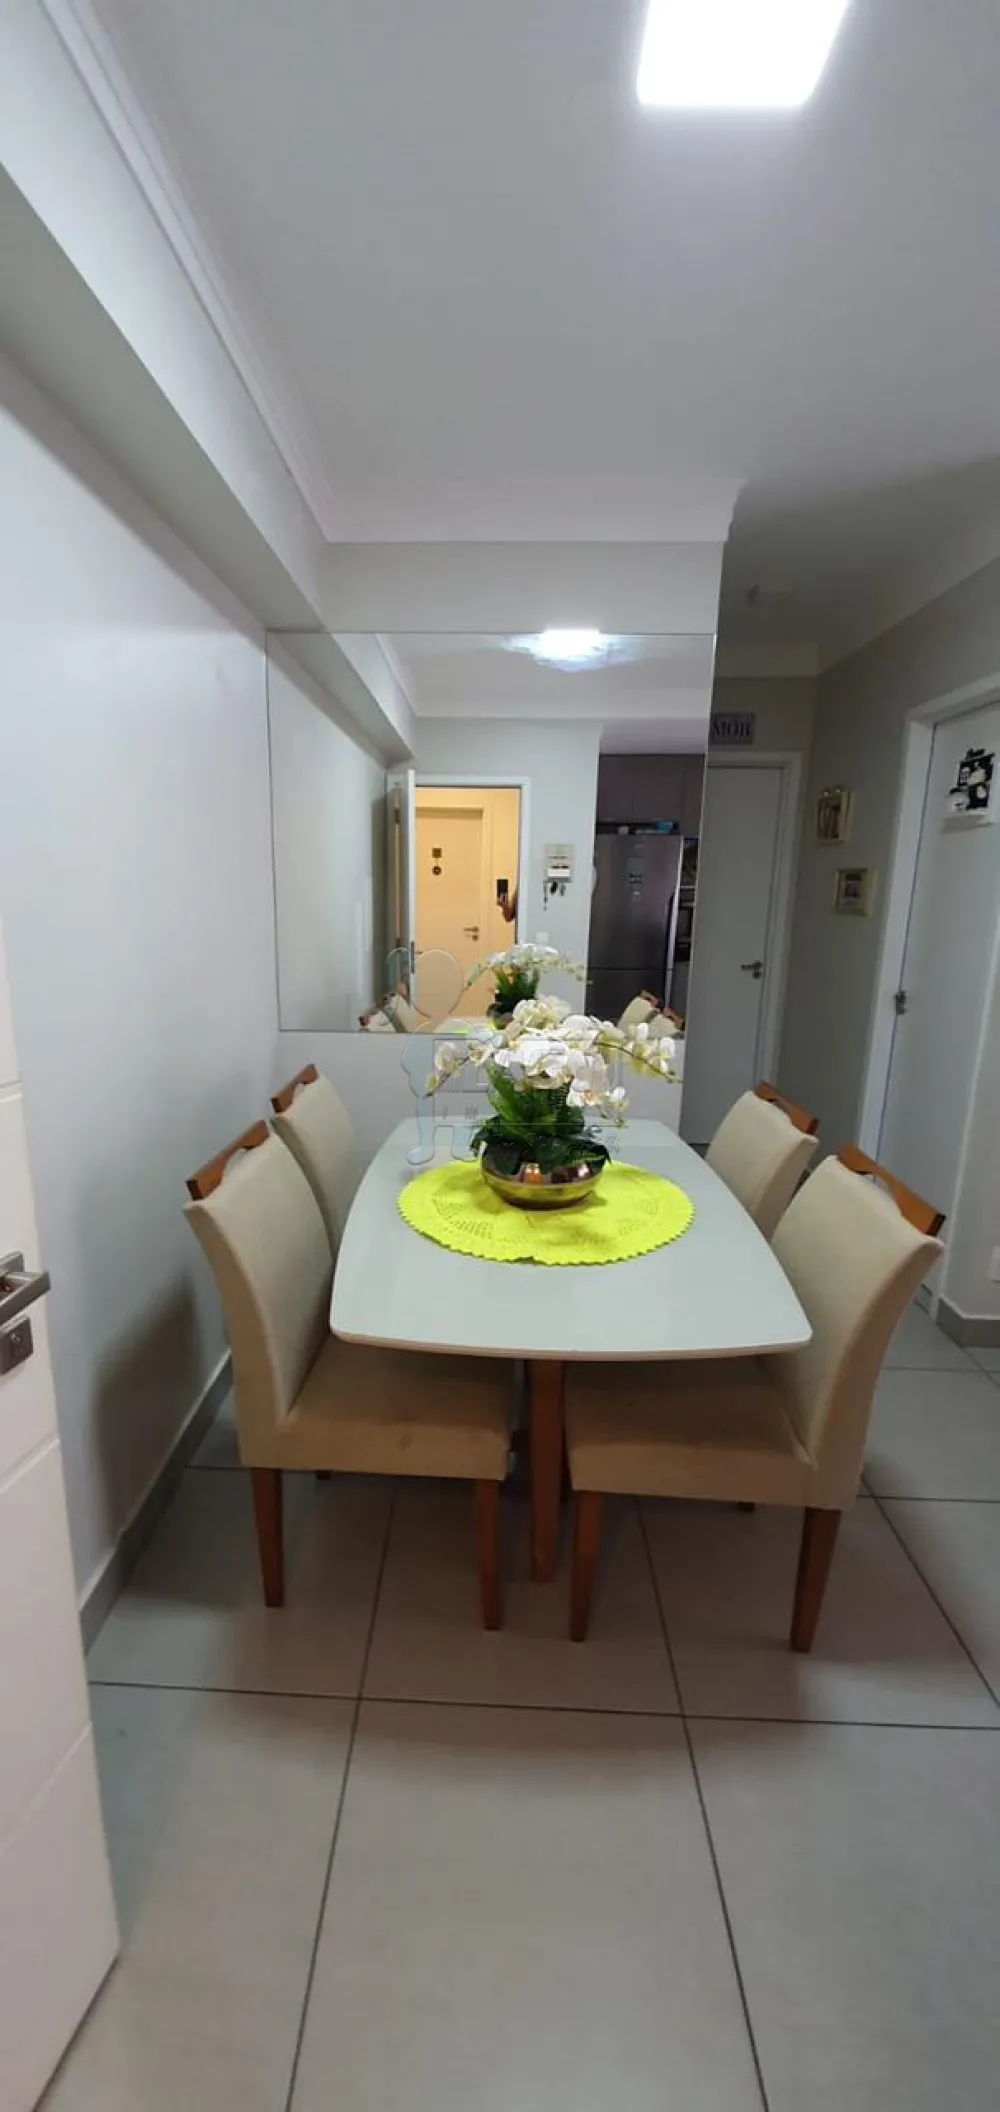 Alugar Apartamento / Padrão em Ribeirão Preto R$ 2.400,00 - Foto 7